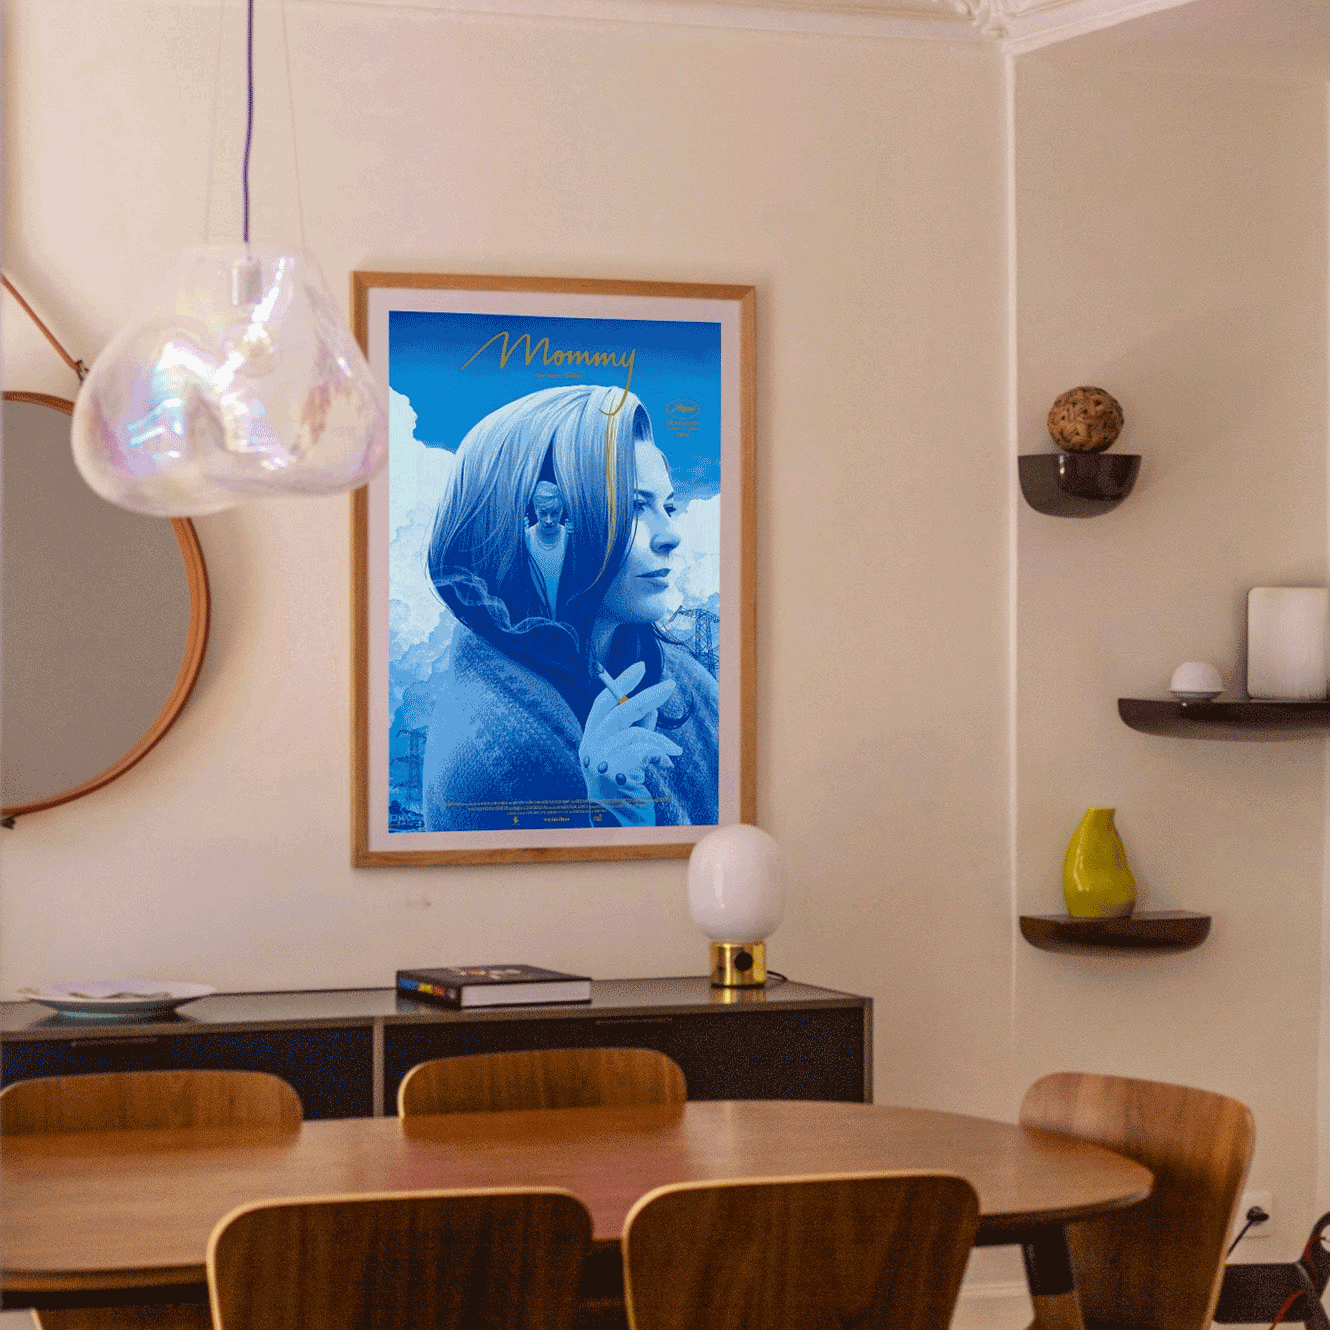 Plakat - maison d'edition d'affiche en serigraphie - affiche de cinema mommy variant (bleu) réalisée par Jeremy enecio - imprimée en edition limitée numérotée main